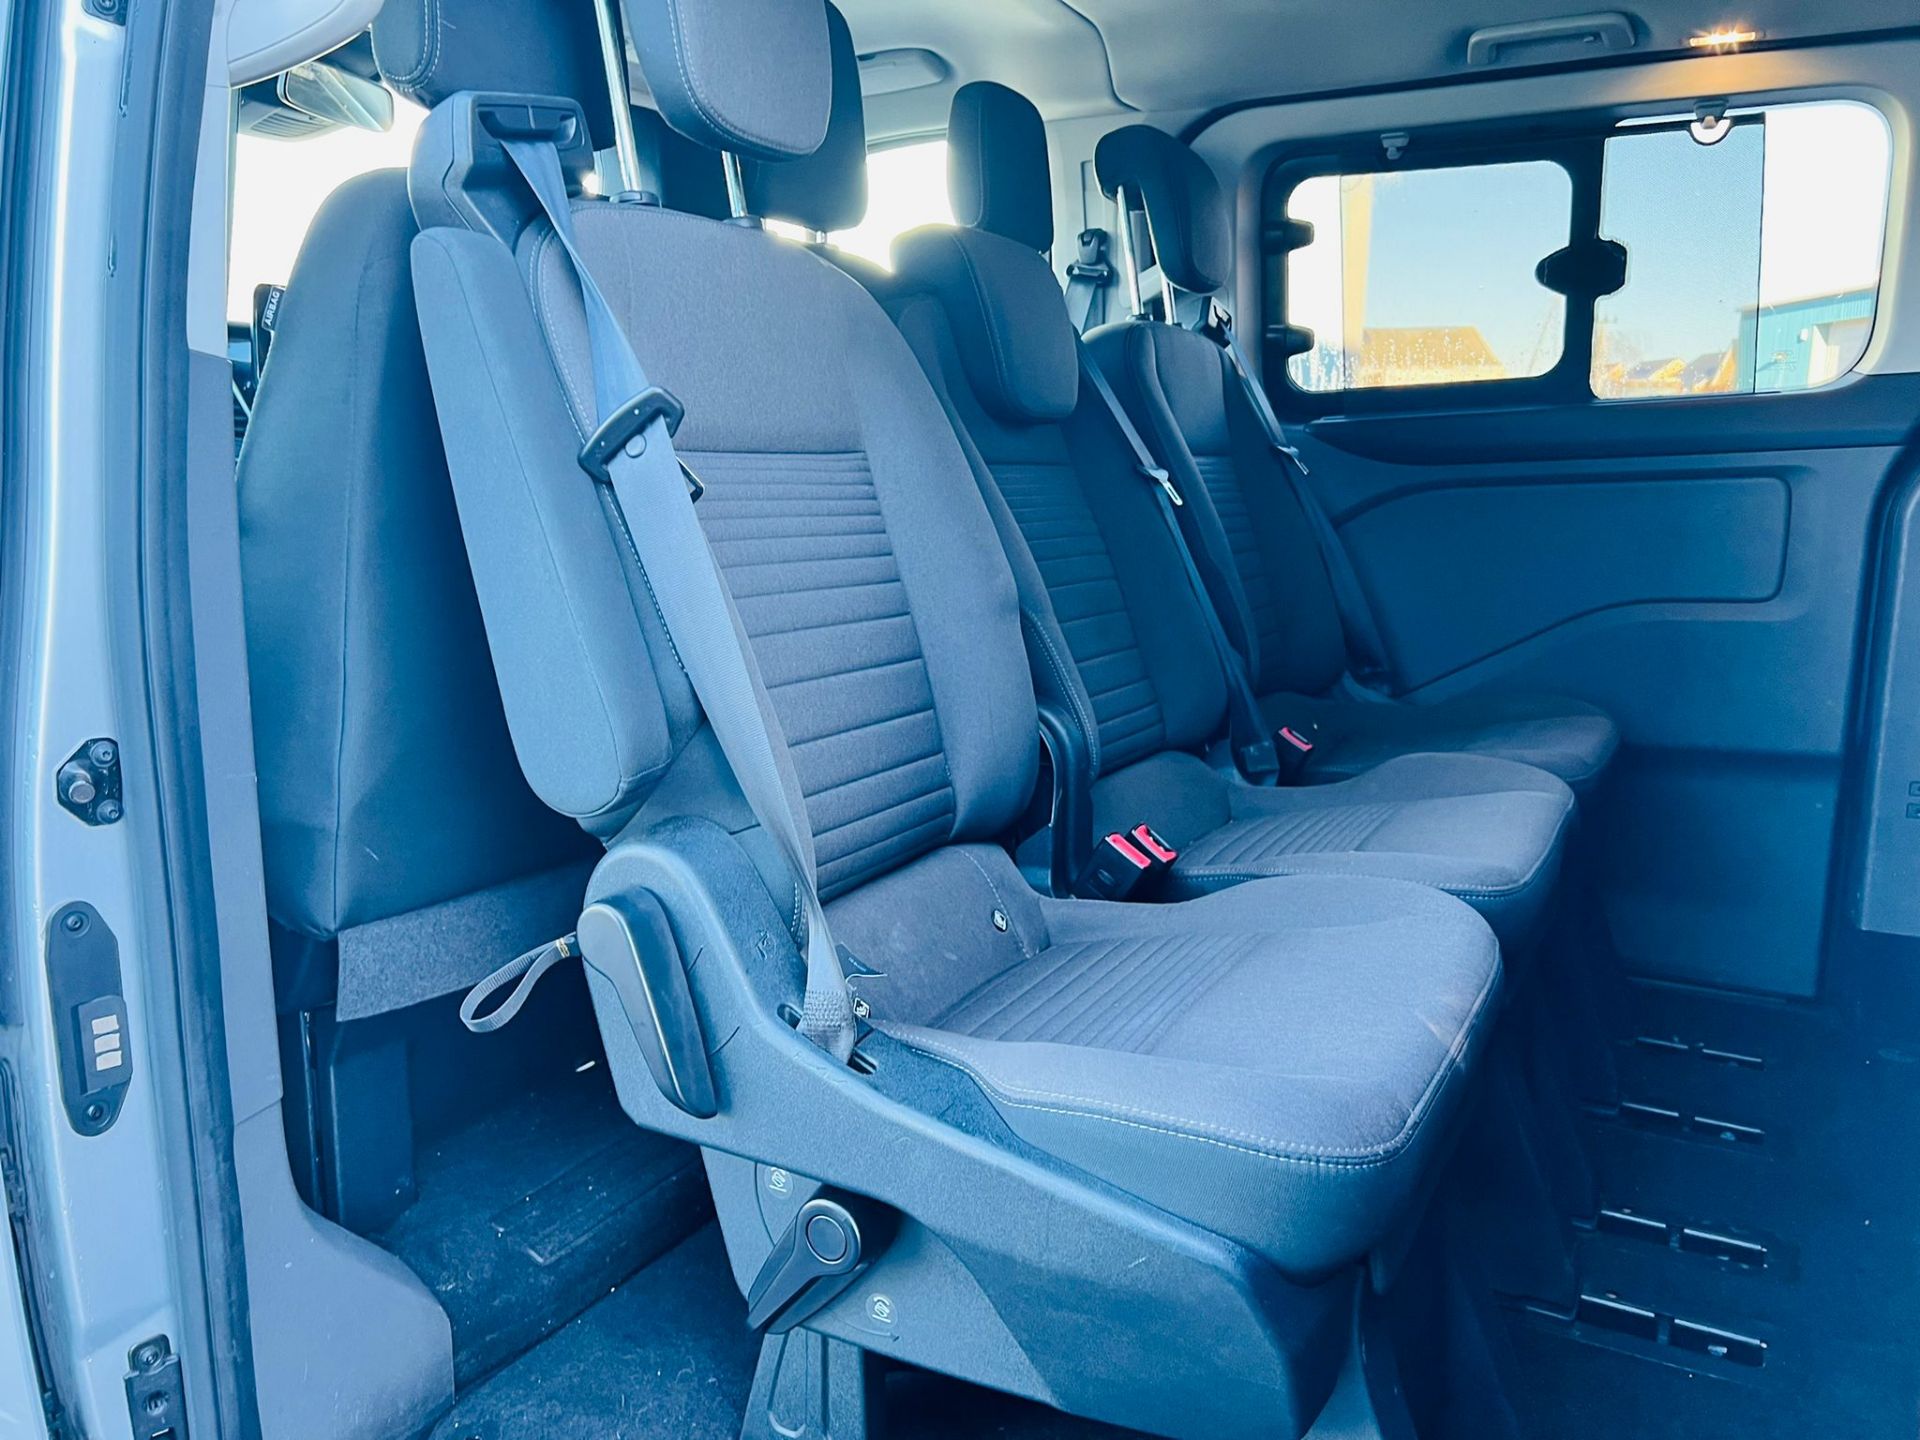 (Reserve Met) Ford Transit Custom 310 130 2.0 Tdci Titanium 9 Seater MiniBus 2019 Model - Air Con - - Image 12 of 36